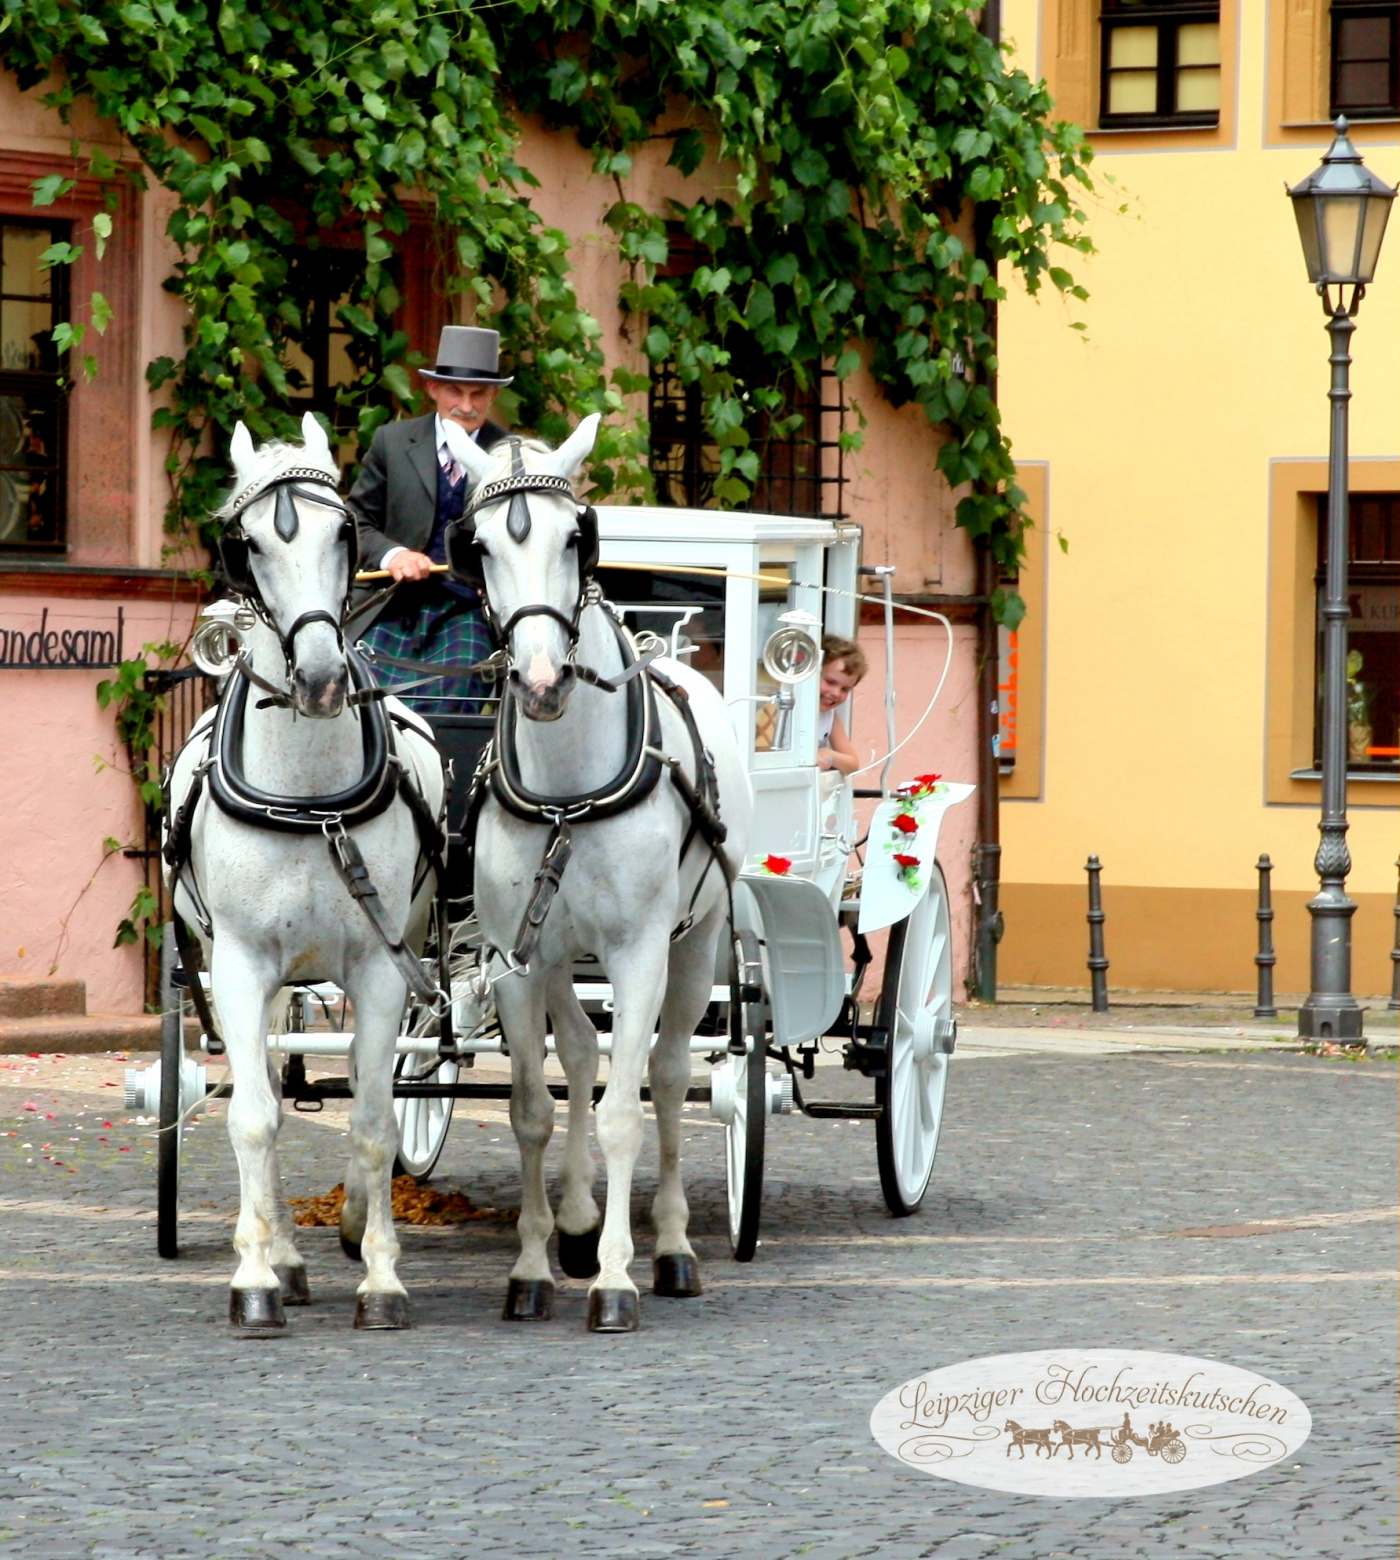 Kutschfahrt zur Hochzeitsmesse durch die Grimmaer Altstadt in Sachsen